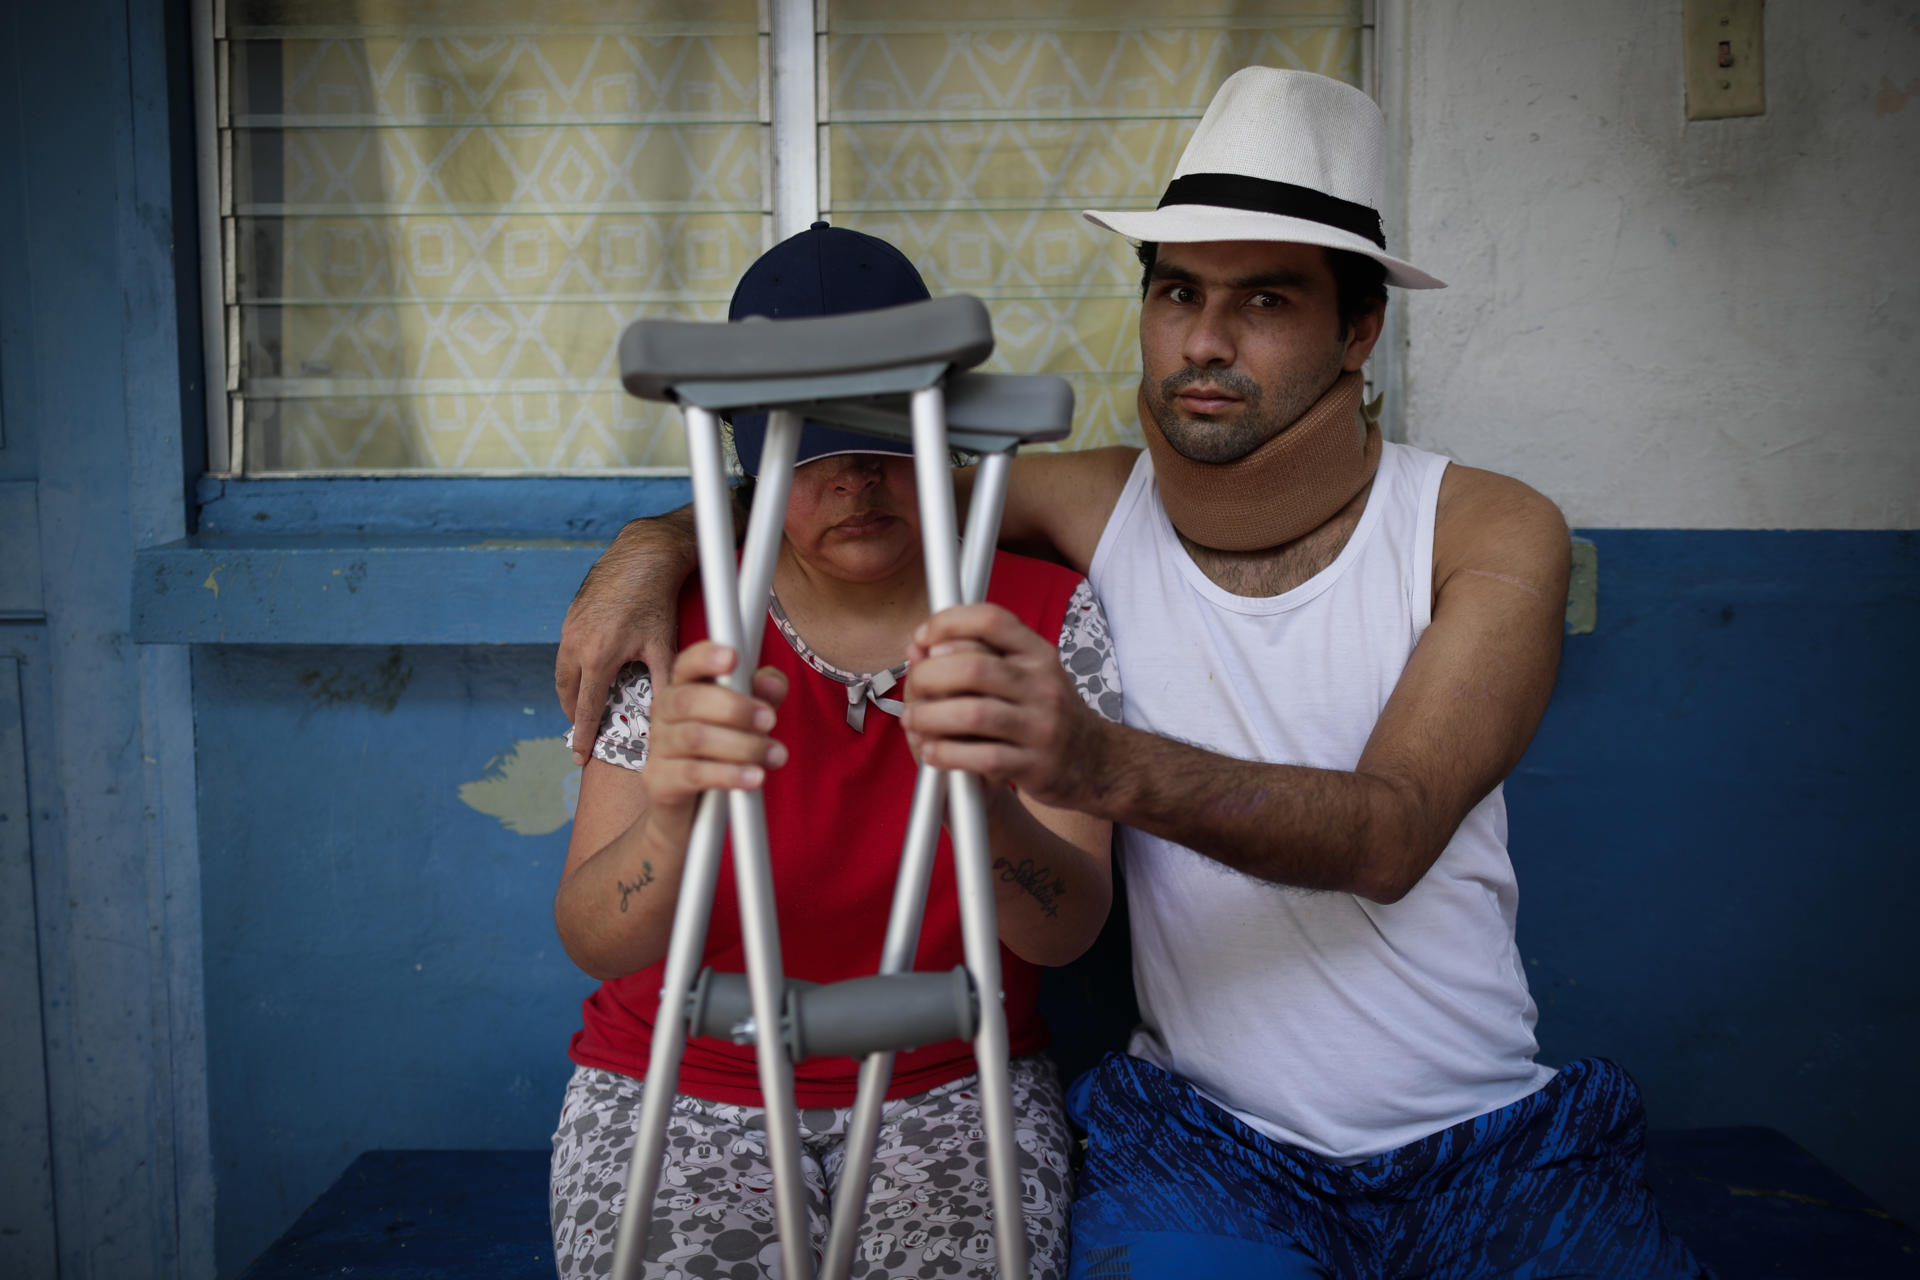 Migrante venezolano que sobrevivió a accidente en Panamá: “El sueño americano es prácticamente una locura”